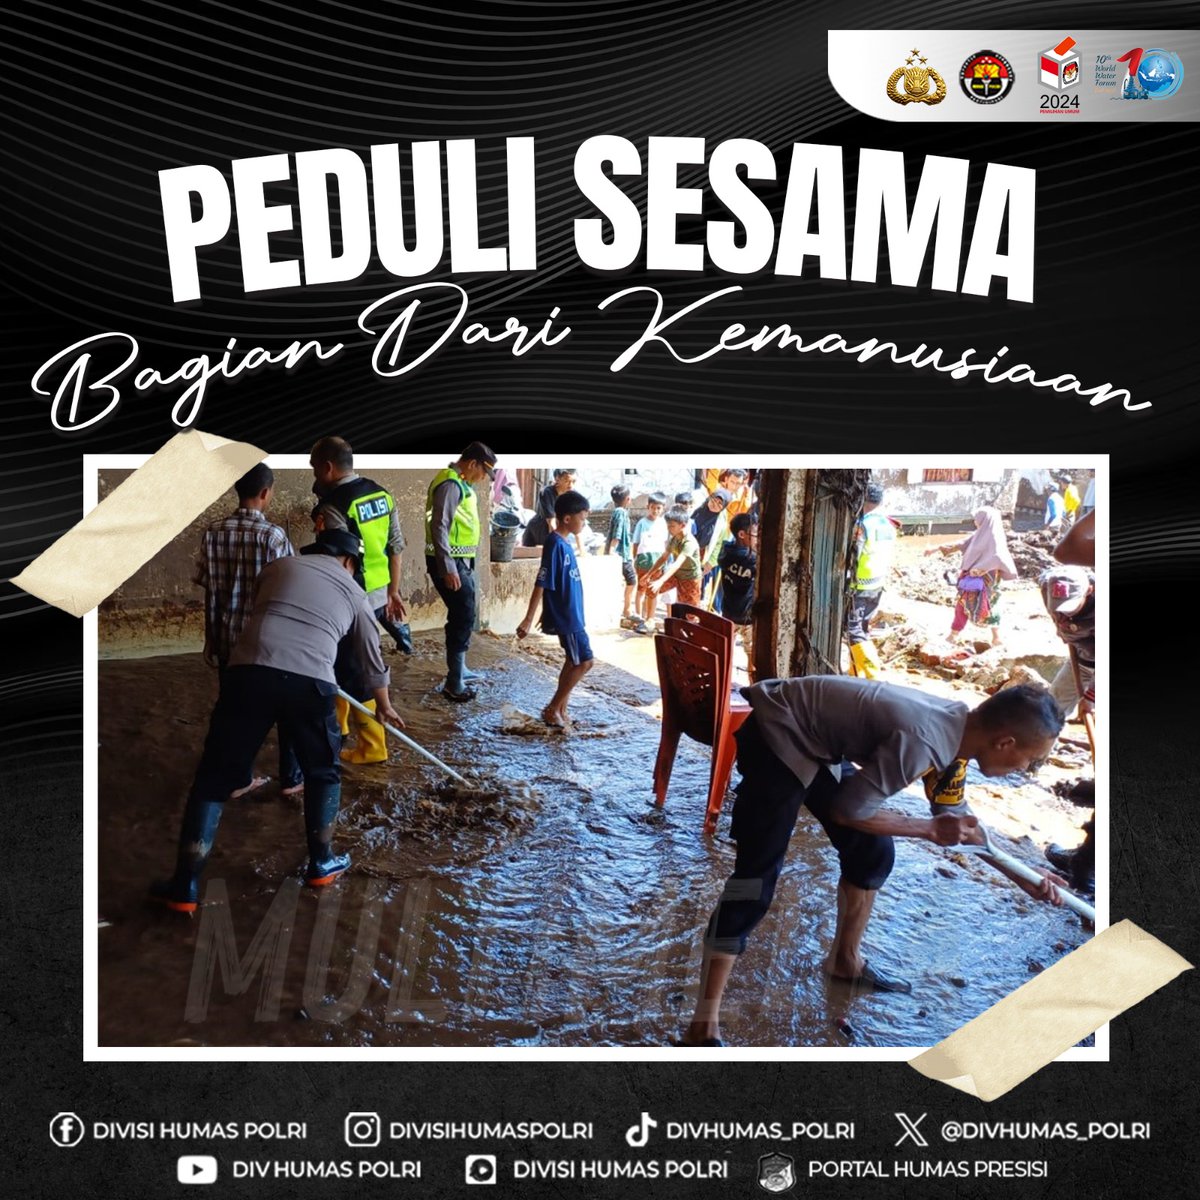 Kompak Saling Bantu Potret Korps Bhayangkara saat bergotong-royong membersihkan sisa-sisa material pascabanjir bandang yang melanda wilayah Sumatera Barat beberapa waktu lalu. #BersamaSiagaBencana